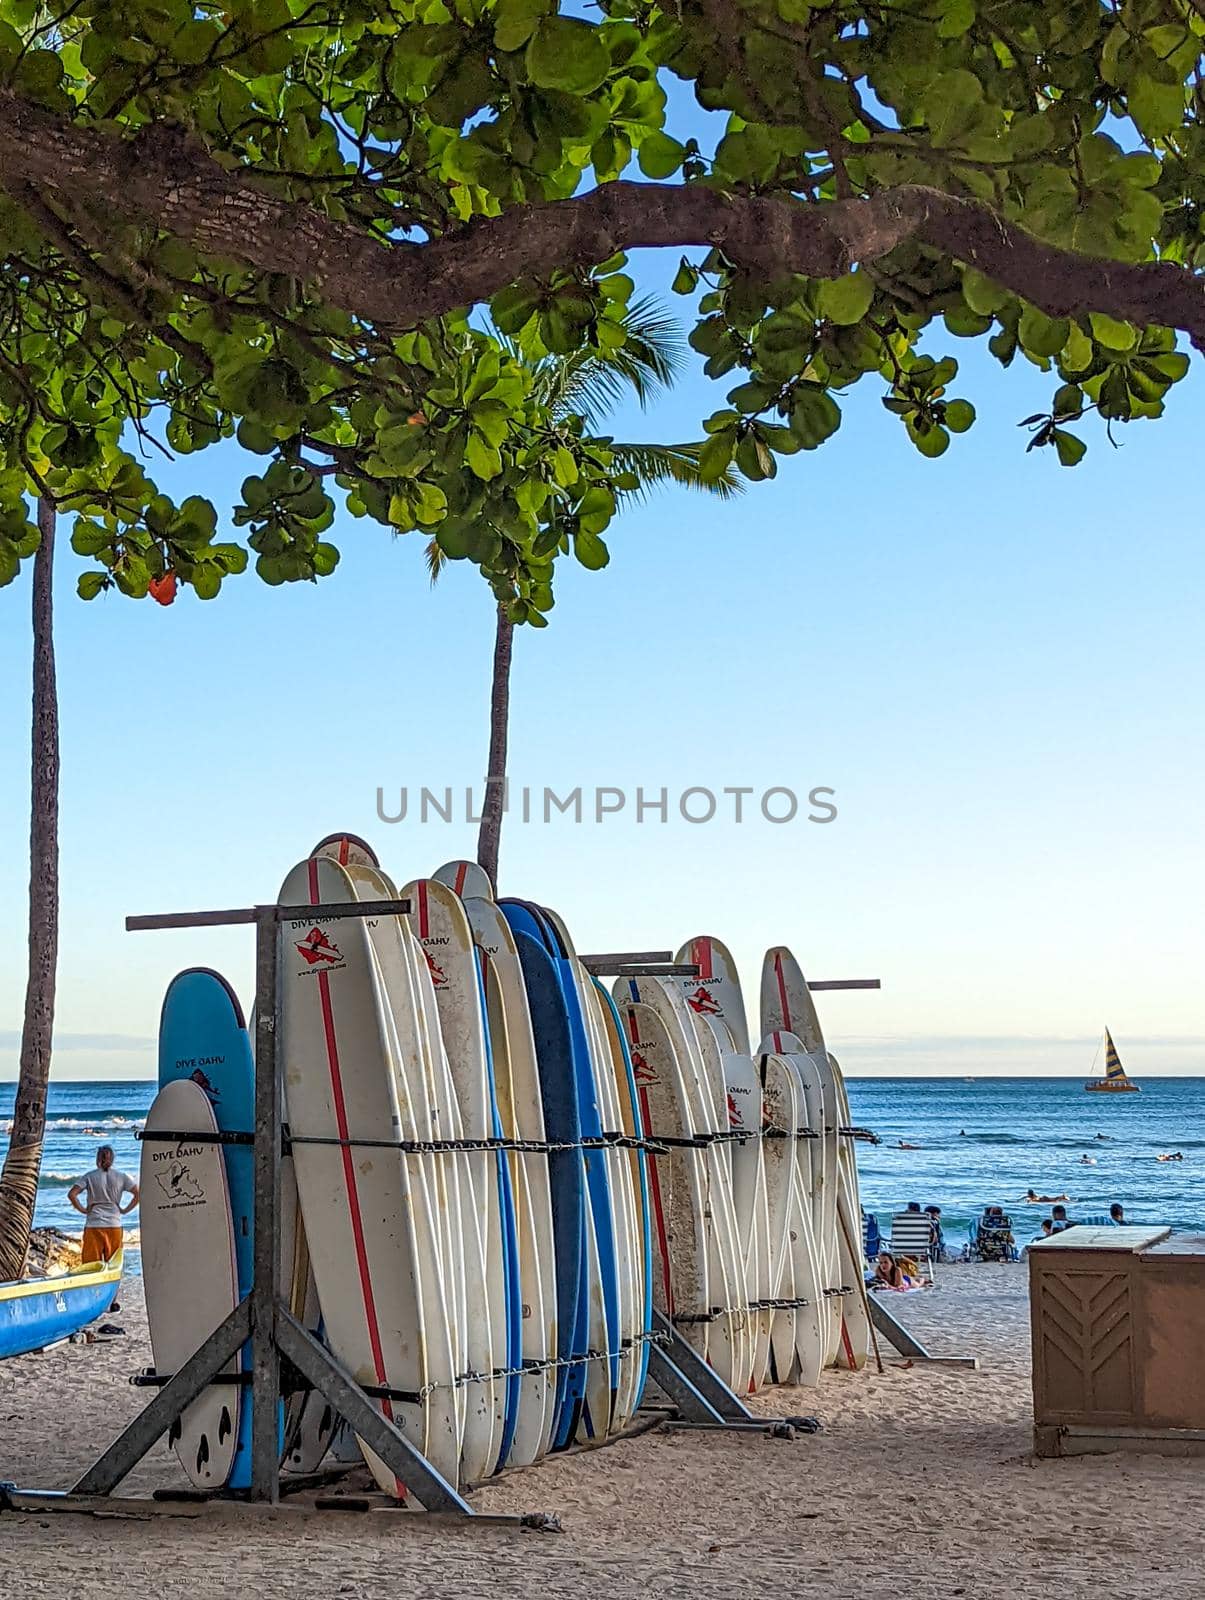 Surf rental shop on Waikiki beach on Hawaii